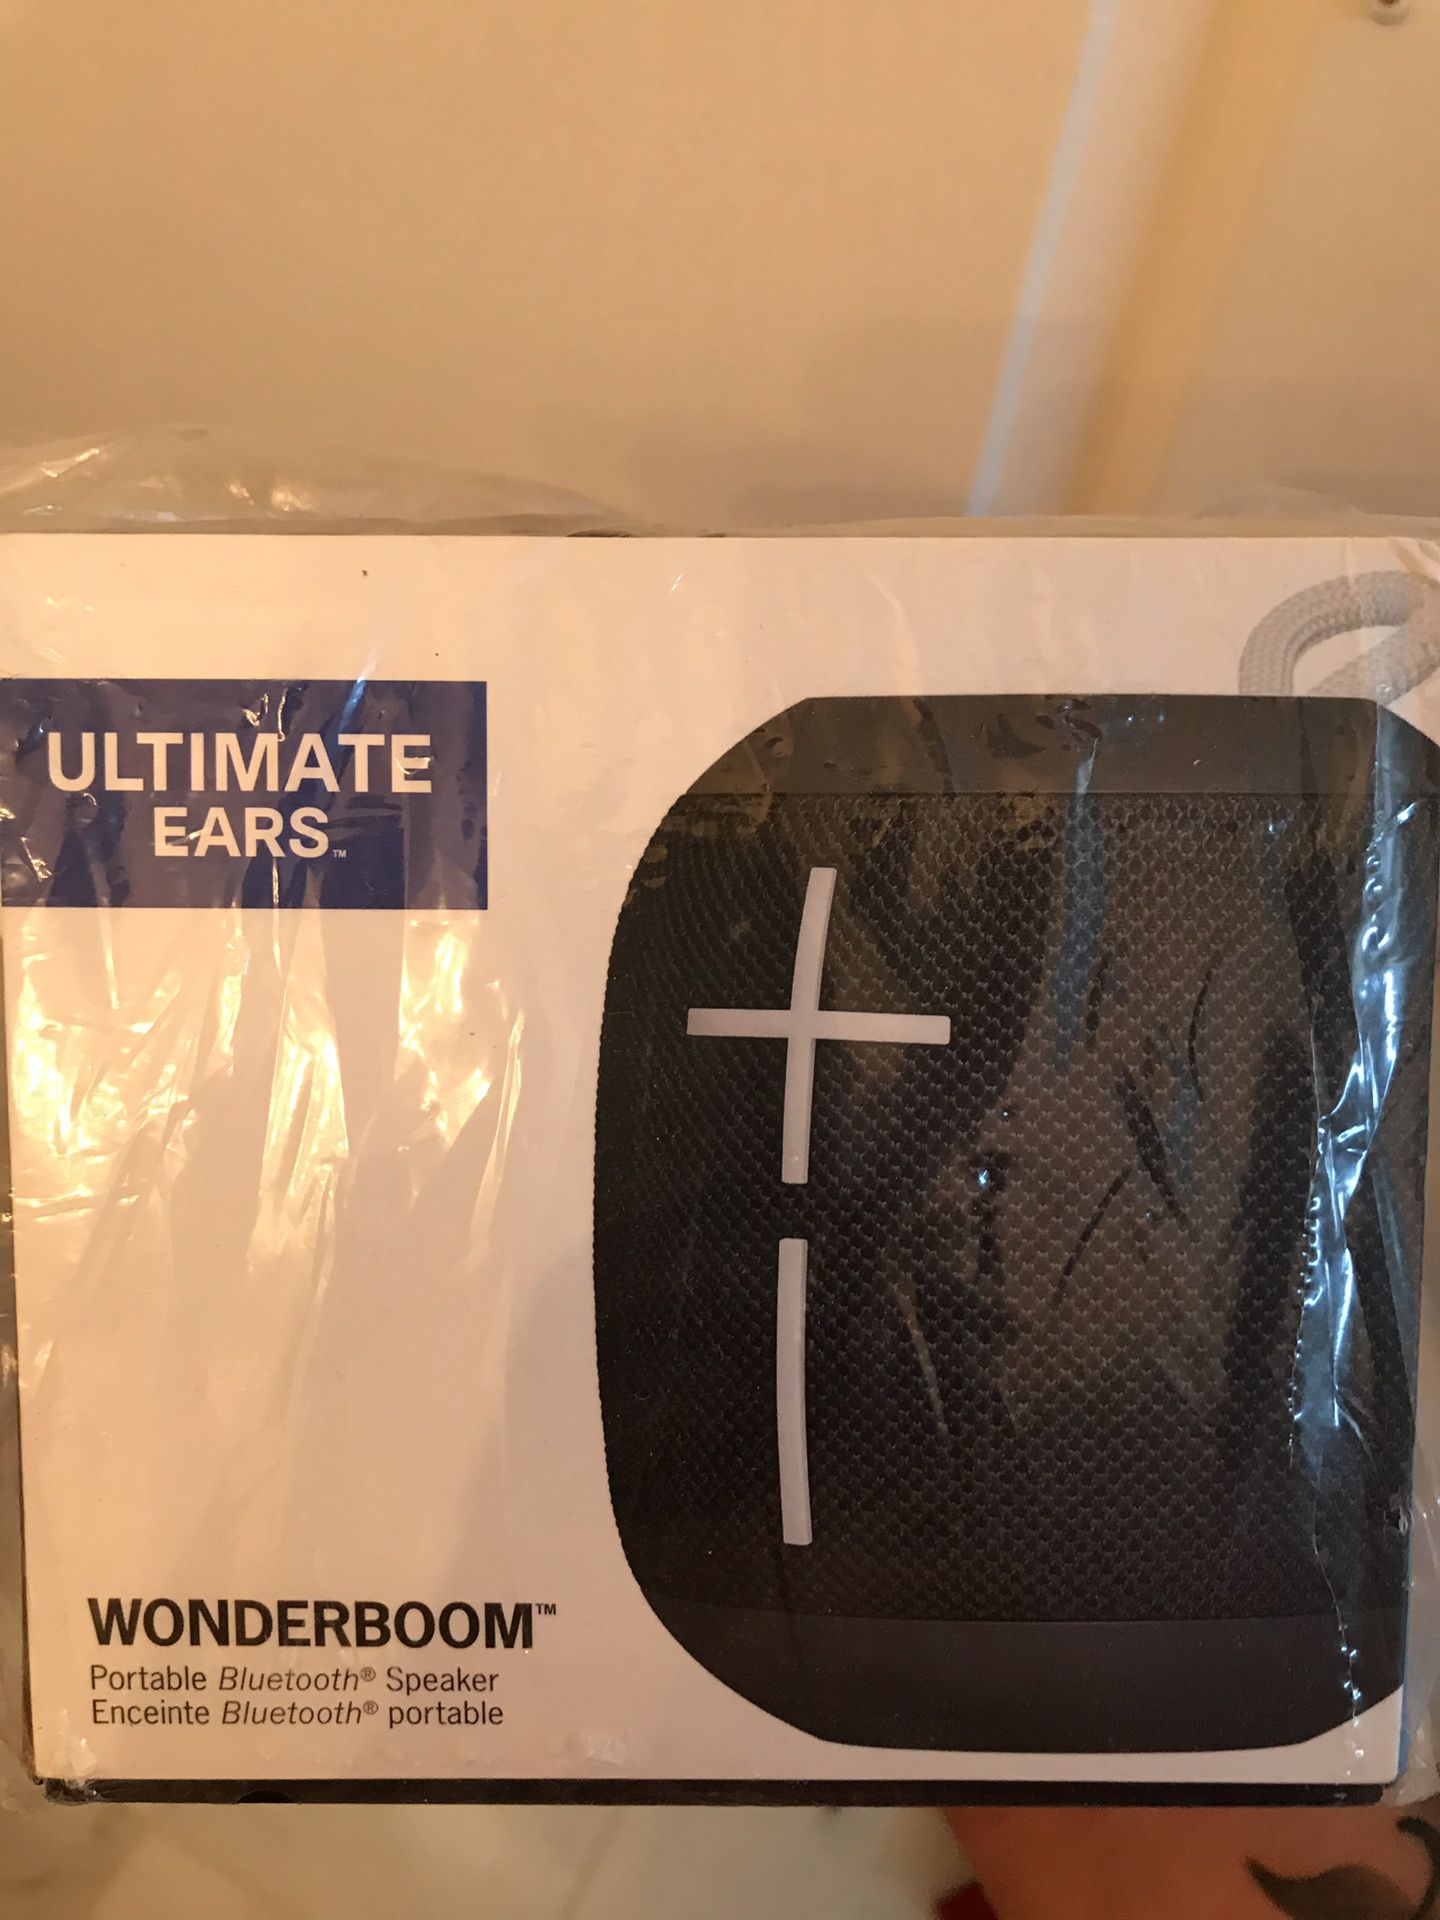 Wonder boom speakers